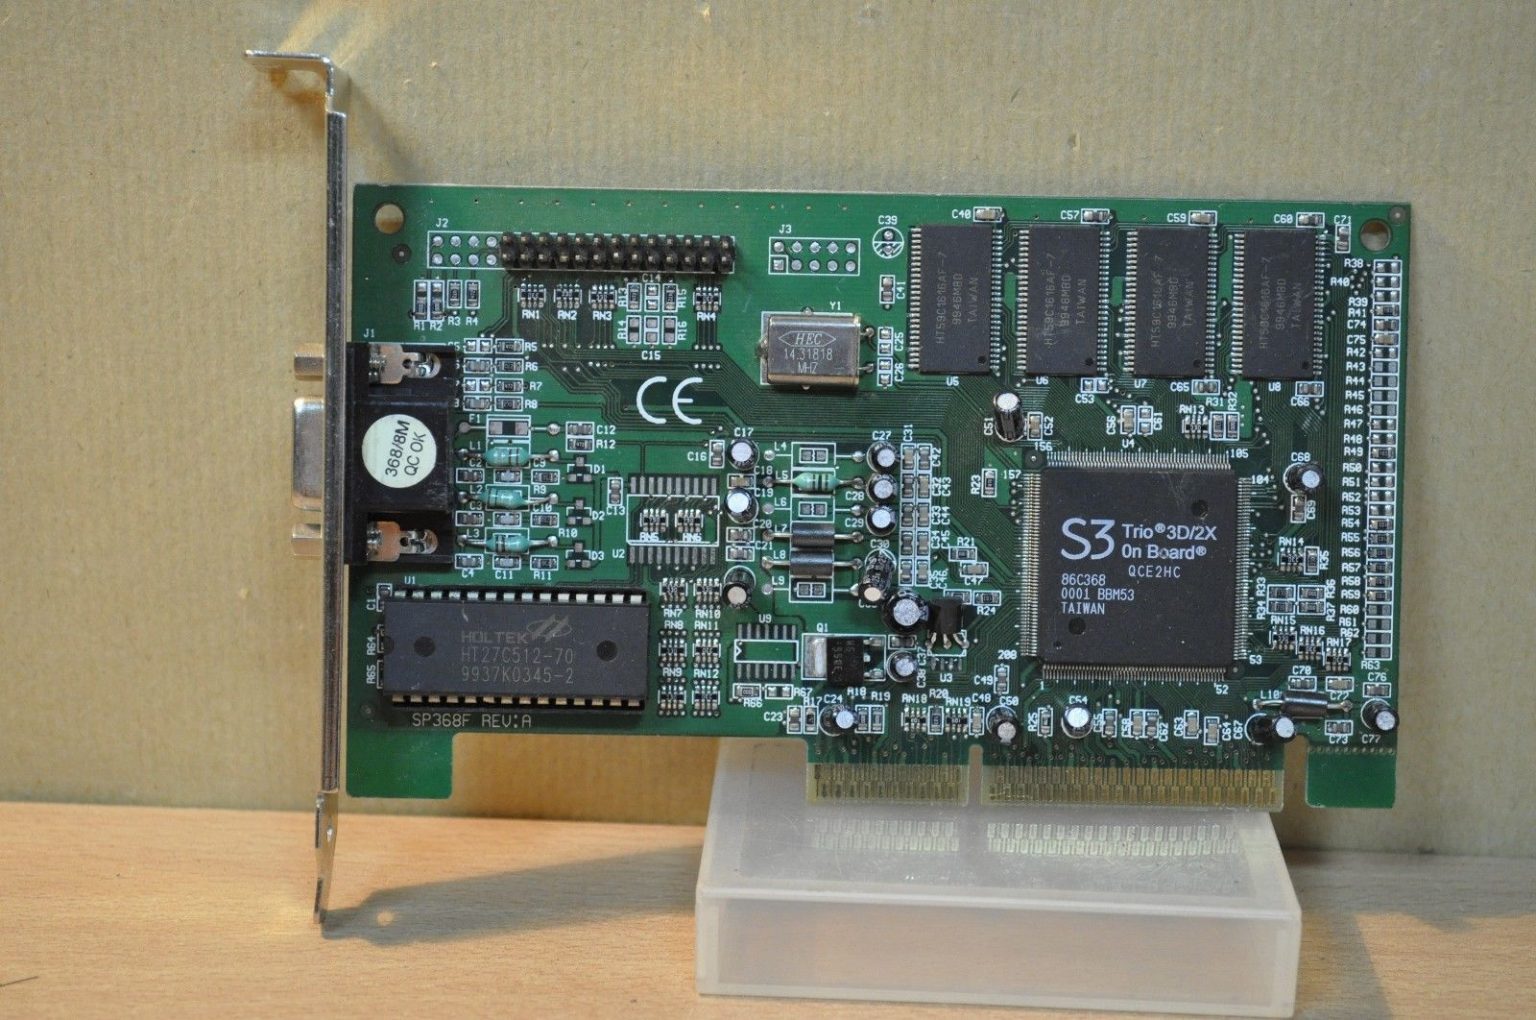 S3 Trio 3D/2X AGP 8MB Graphics Card SP368F Rev:A VGA Port AGP Video